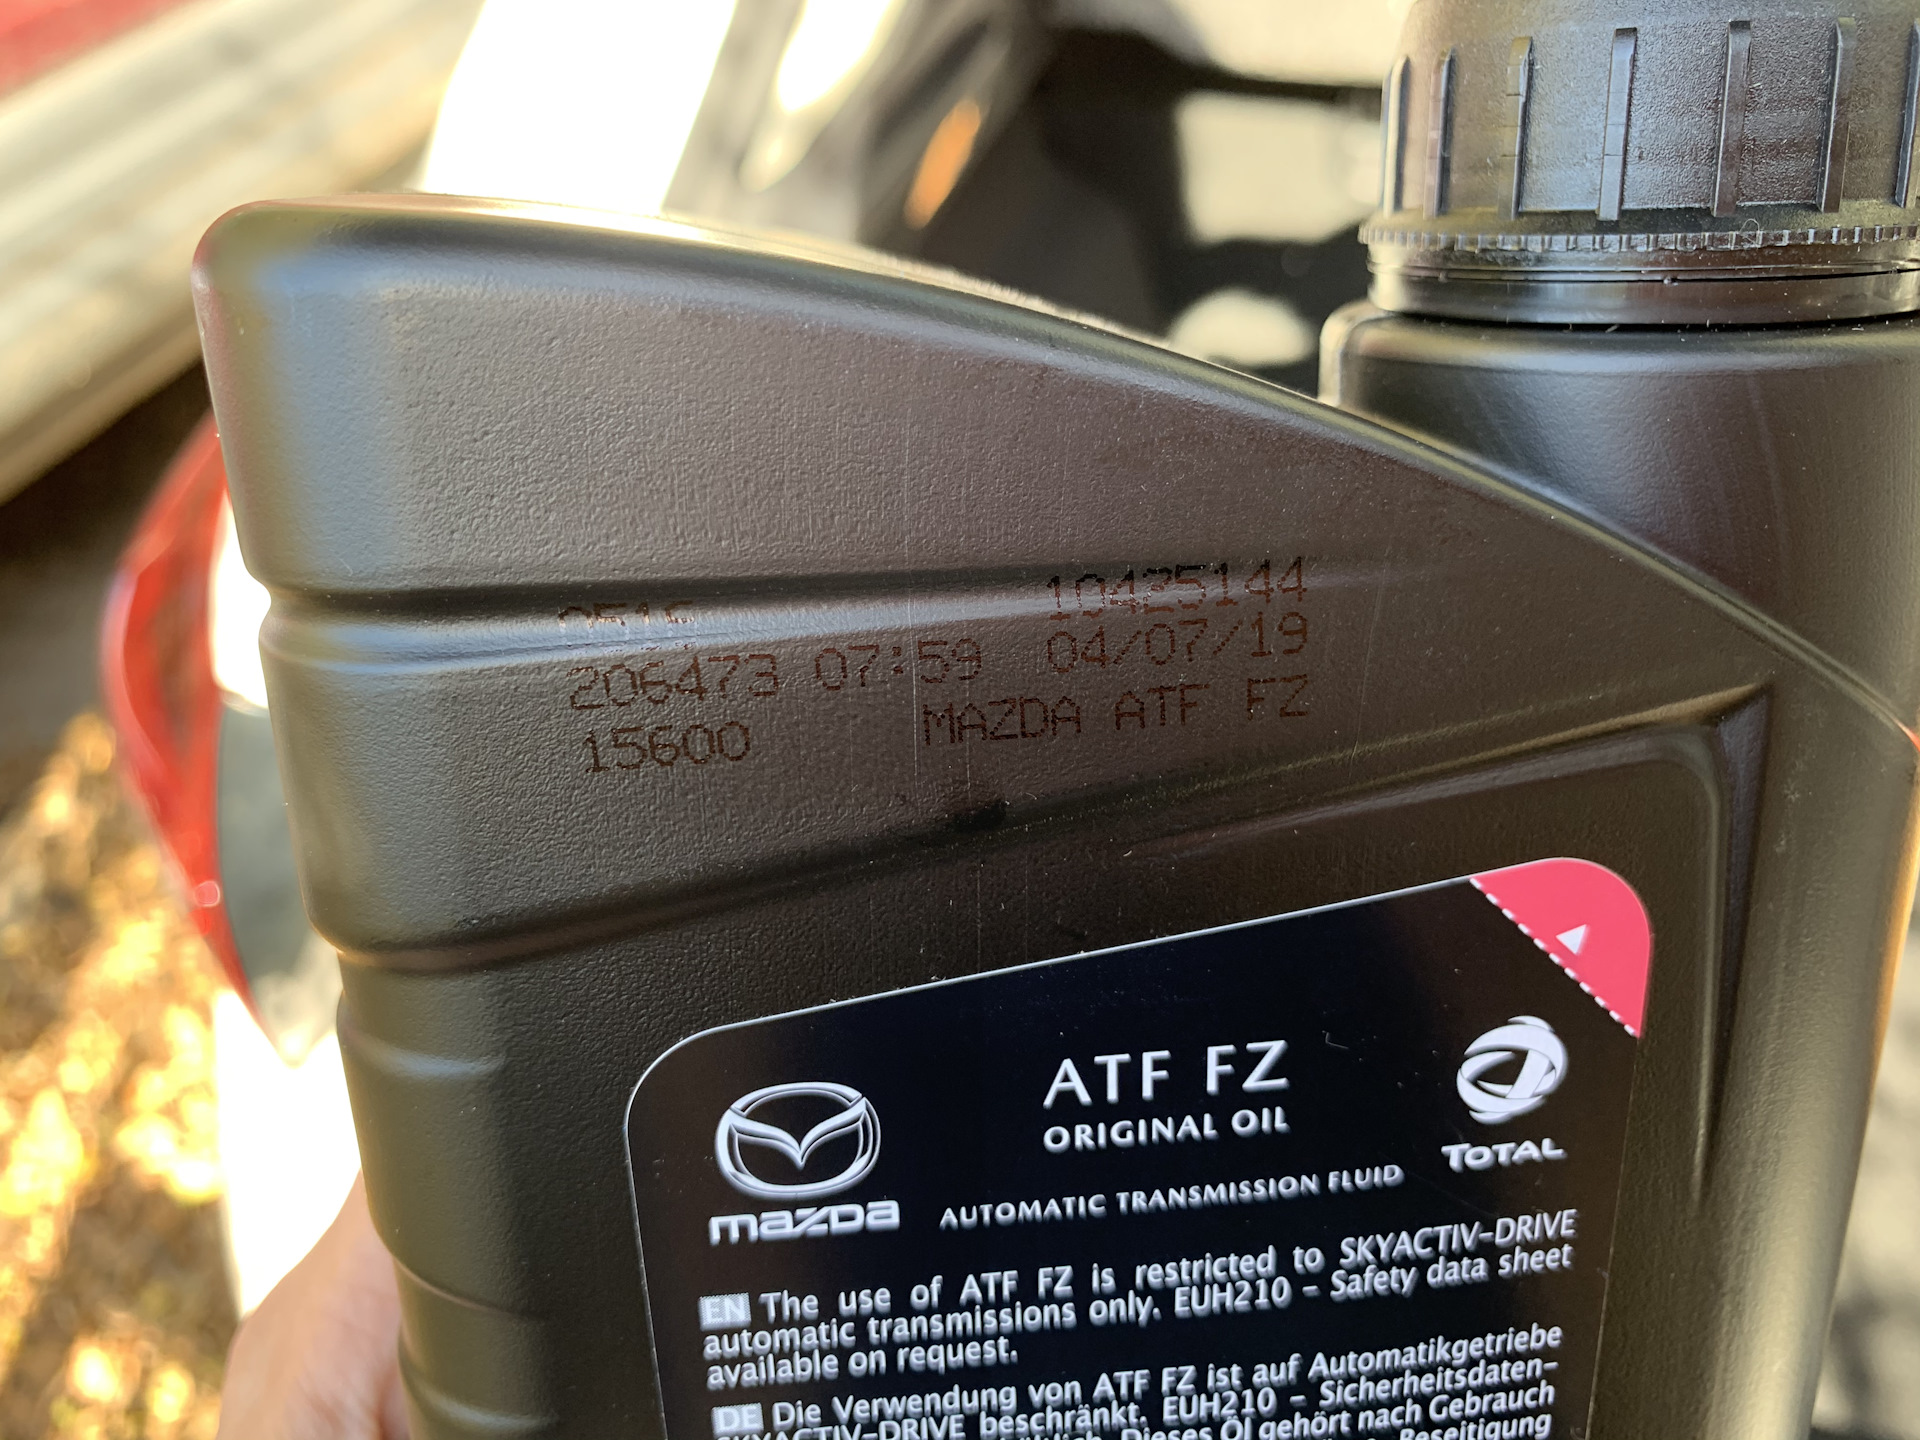 Допуски atf масел. Мазда ATF FZ. Mazda ATF FZ цвет. Mazda 6 2013 цвет масла АКПП ATF FZ. Масляные допуски Мазда CX-5.